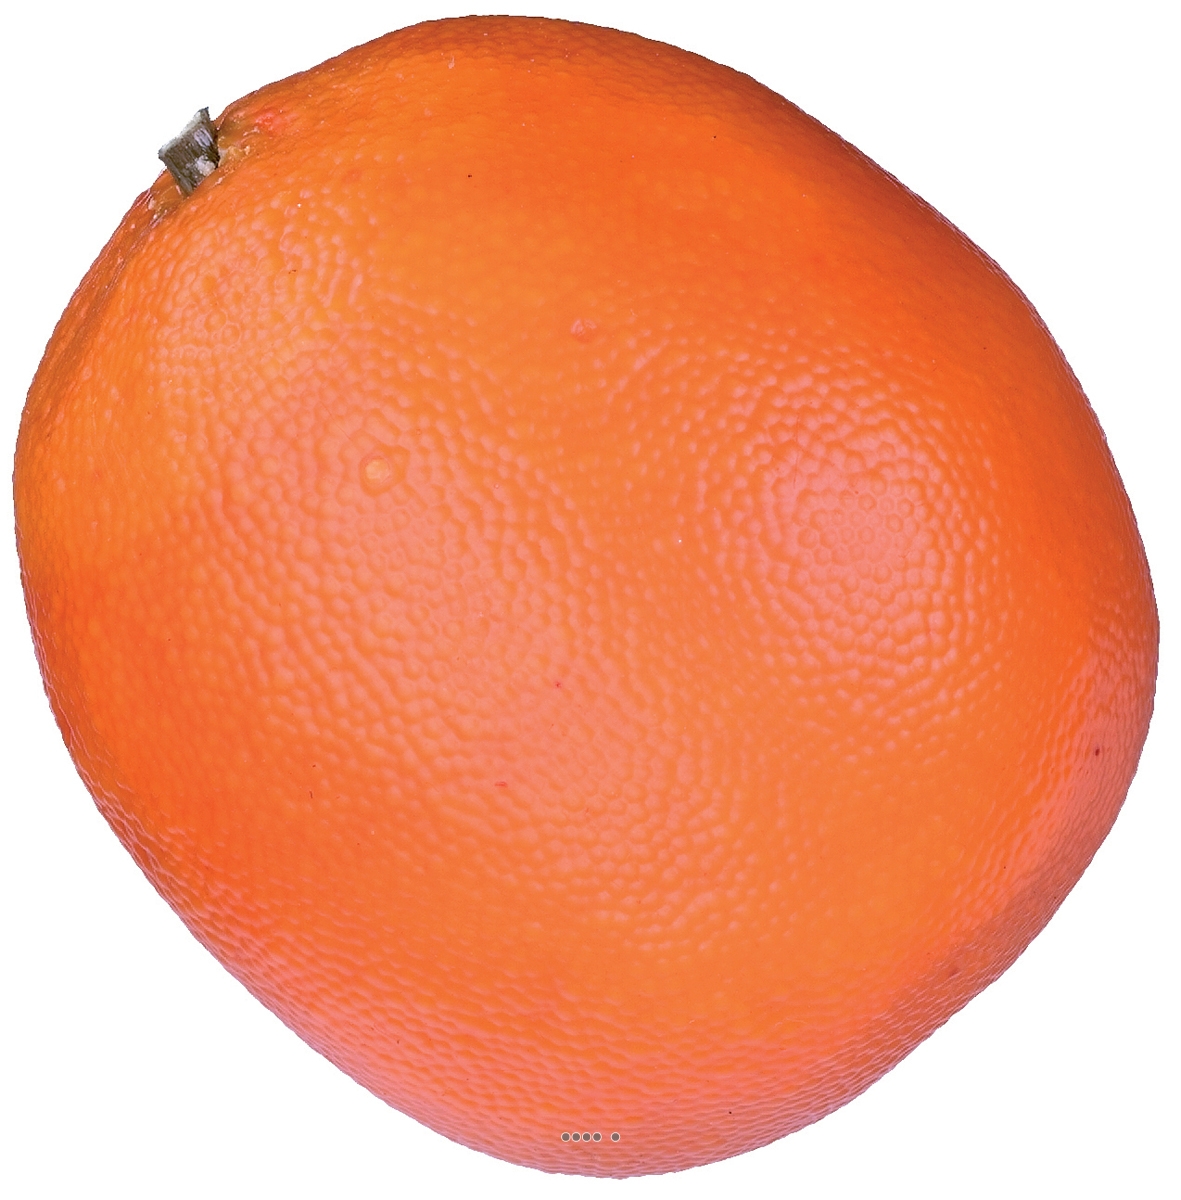 Orange artificielle D 8 cm avec lesté superbe de réalisme